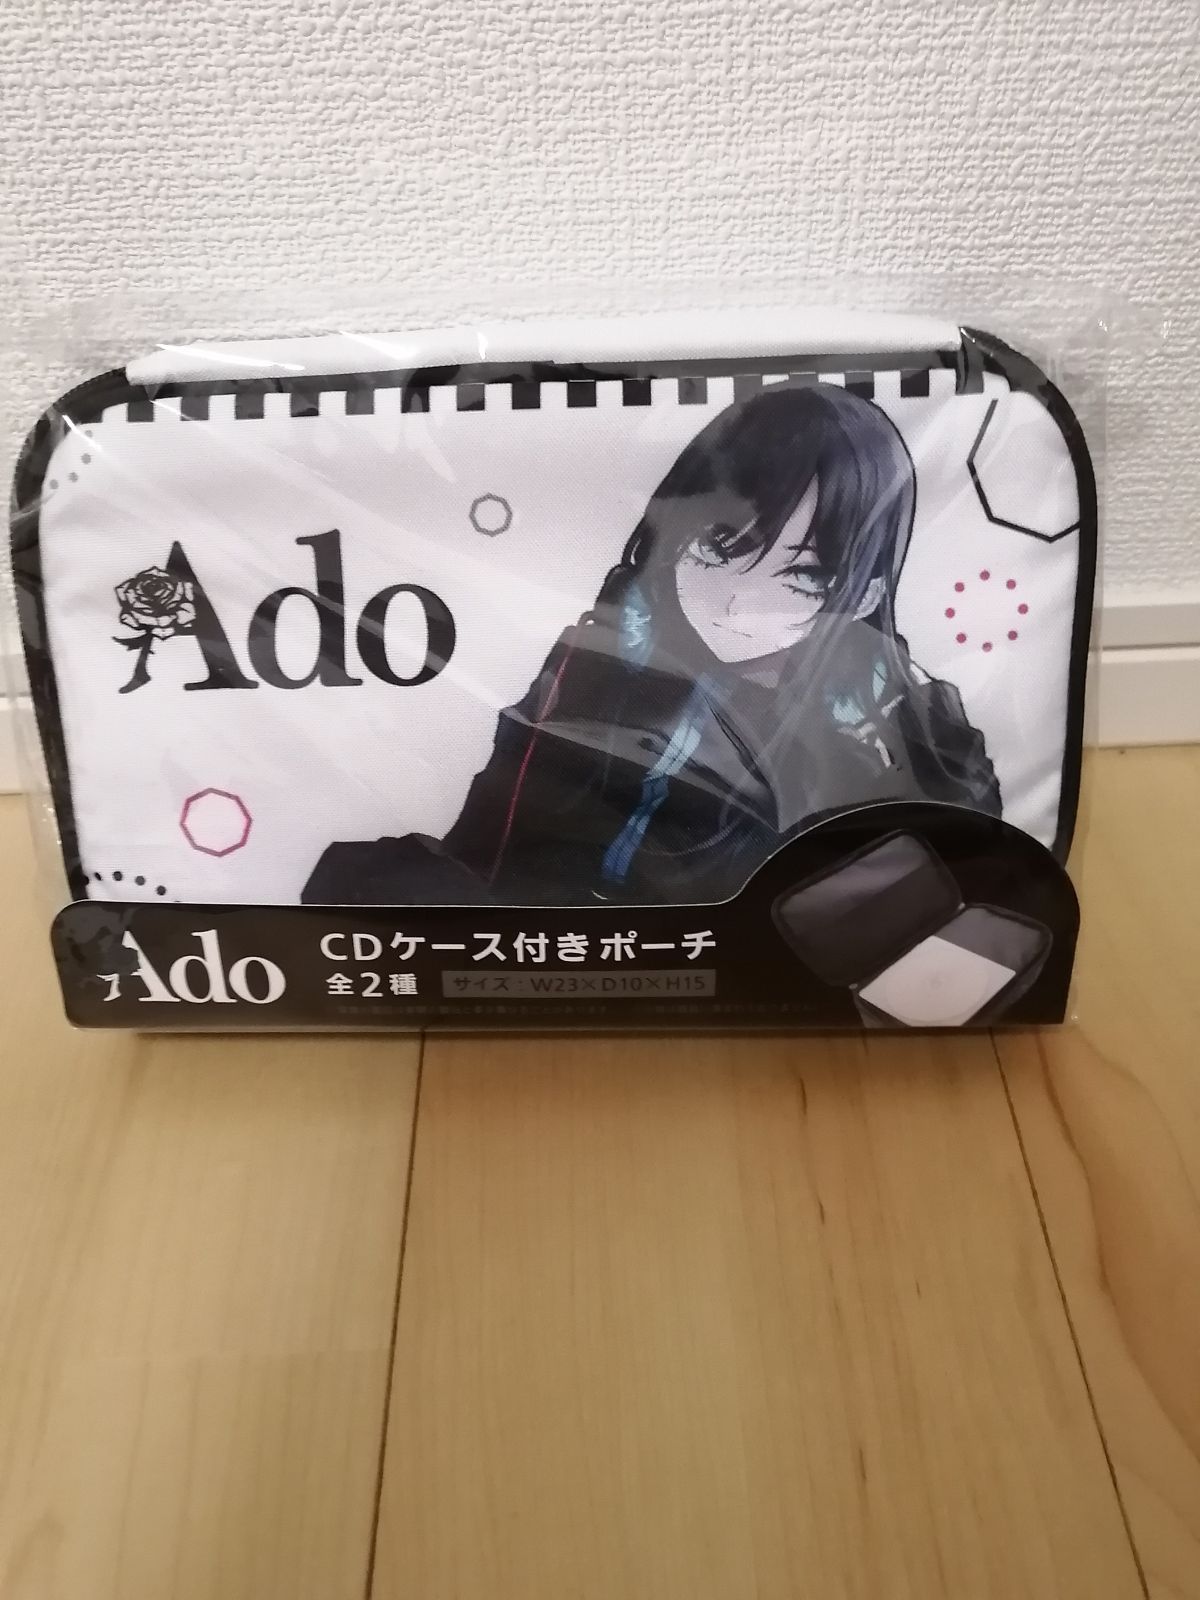 Ado・CDケース付きポーチ